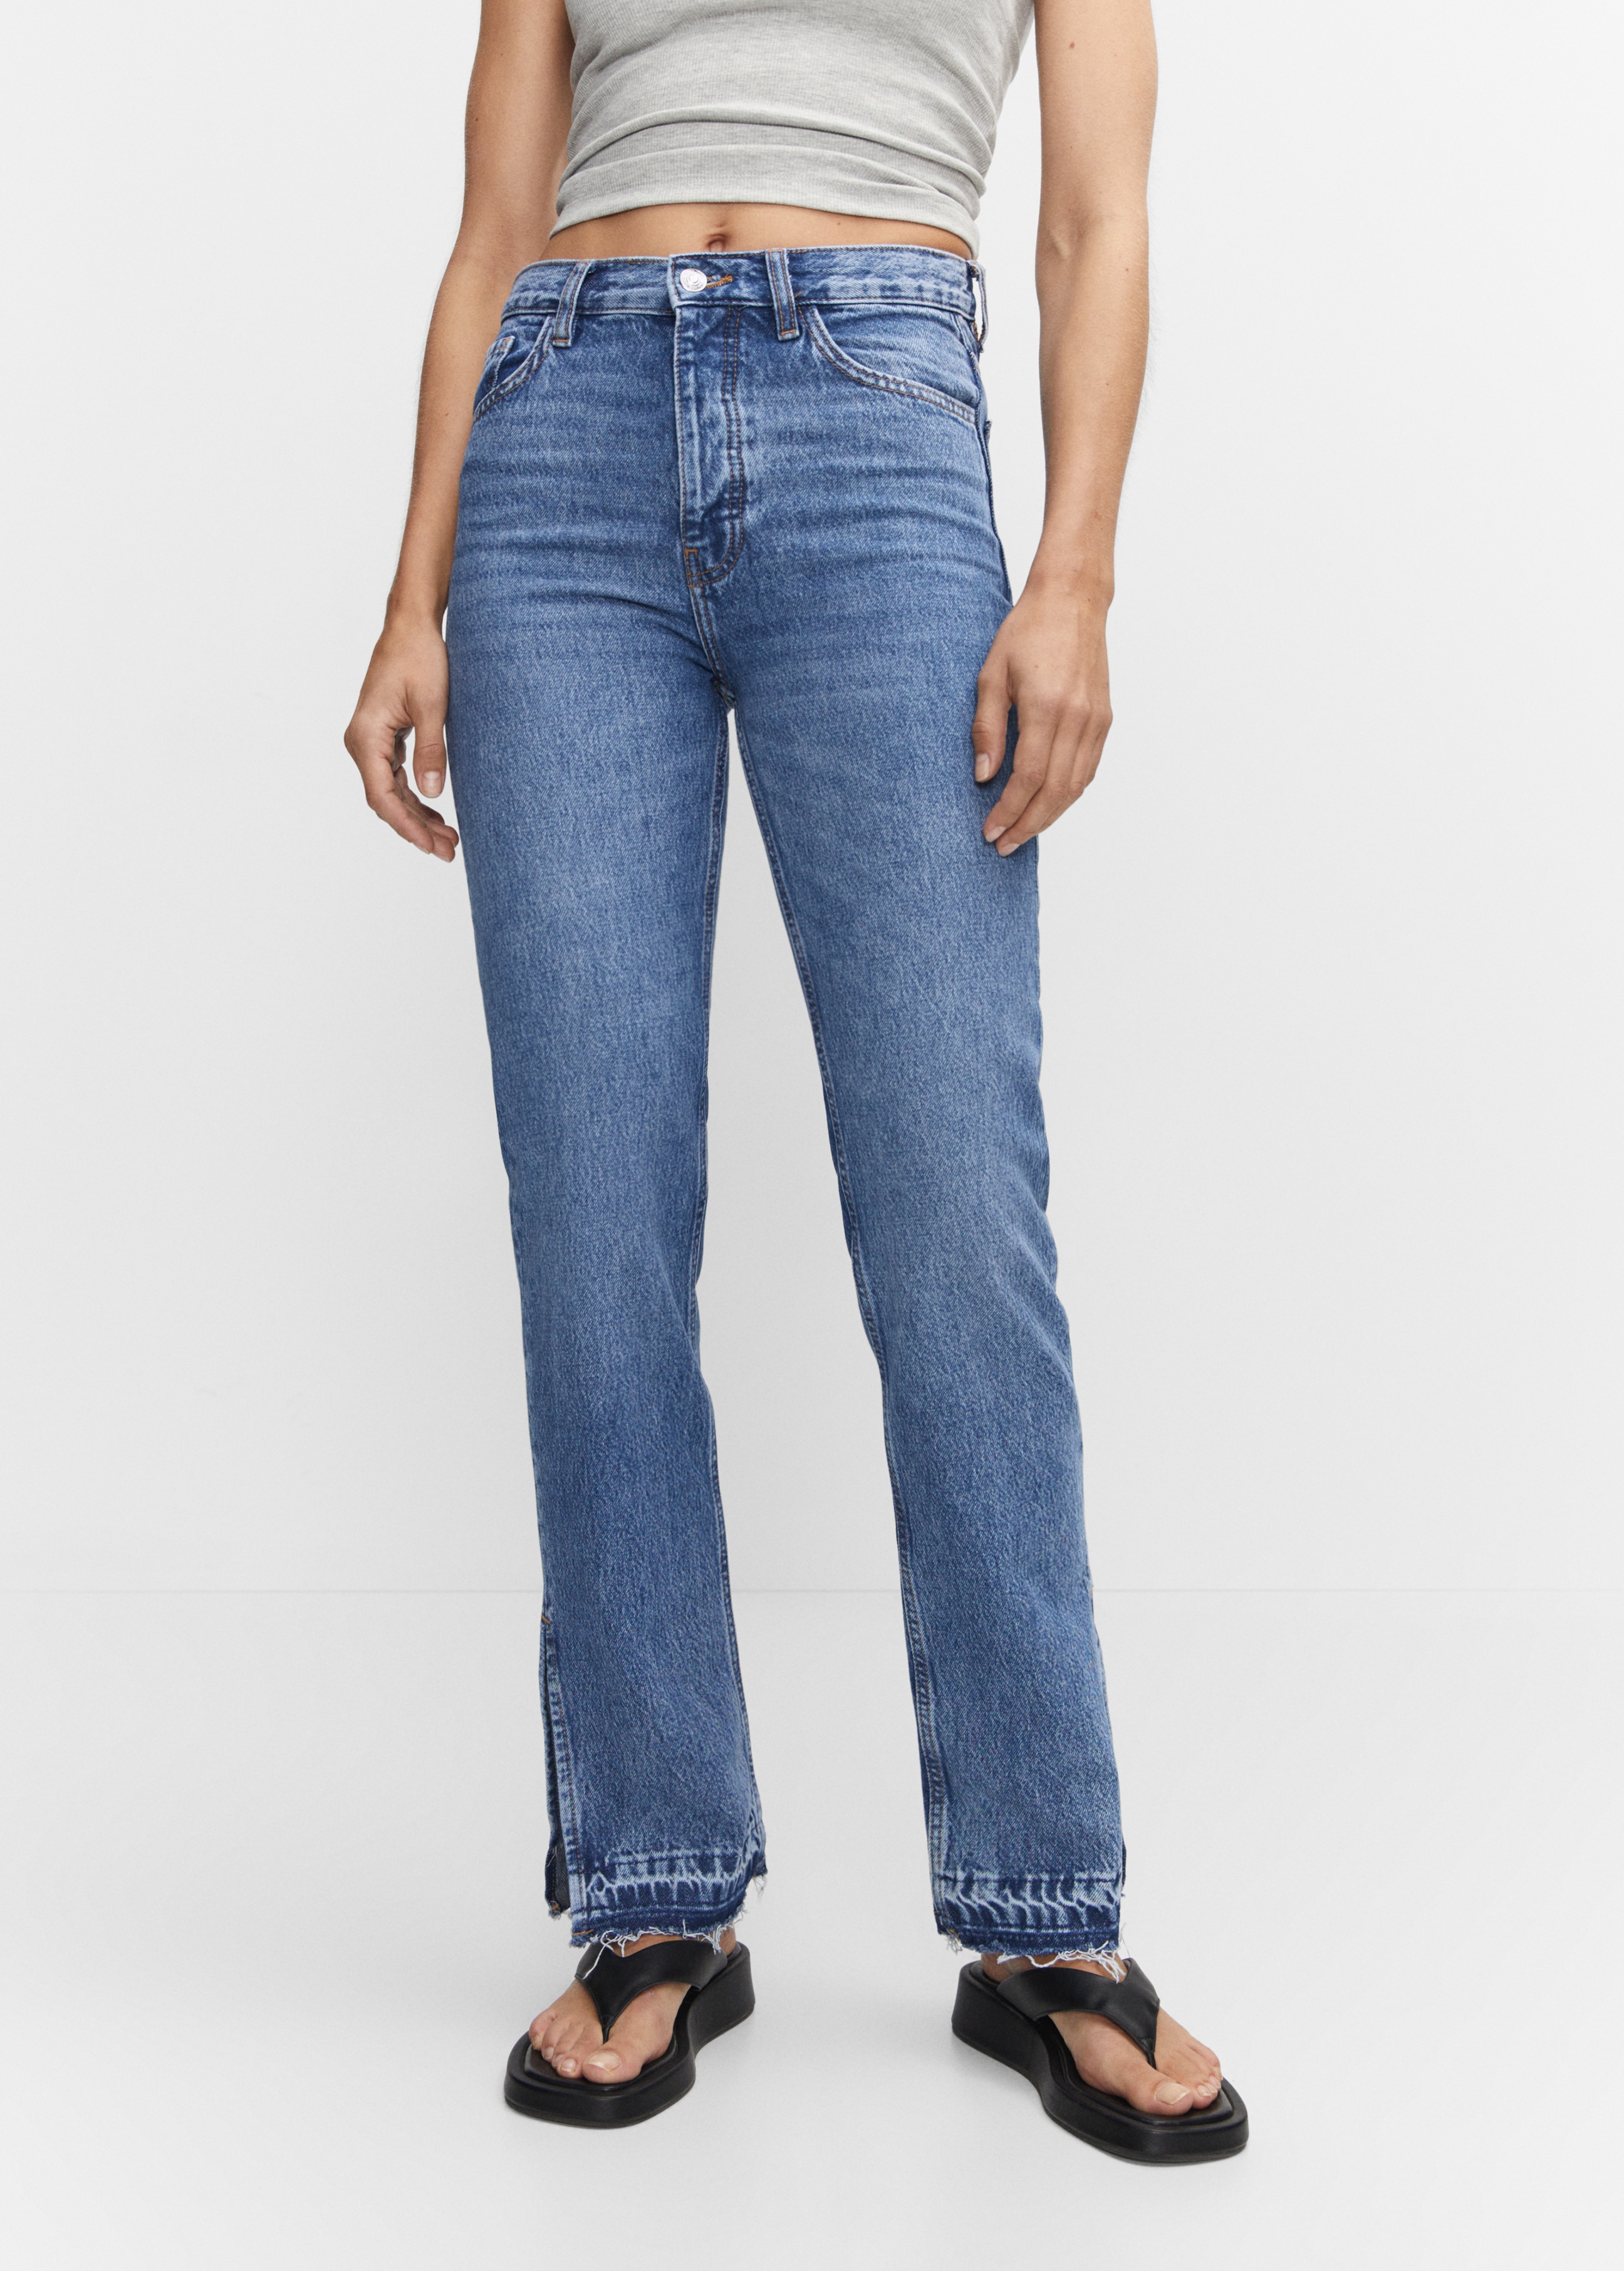 Gerade Jeans mit hohem Bund und Schlitzen - Mittlere Ansicht